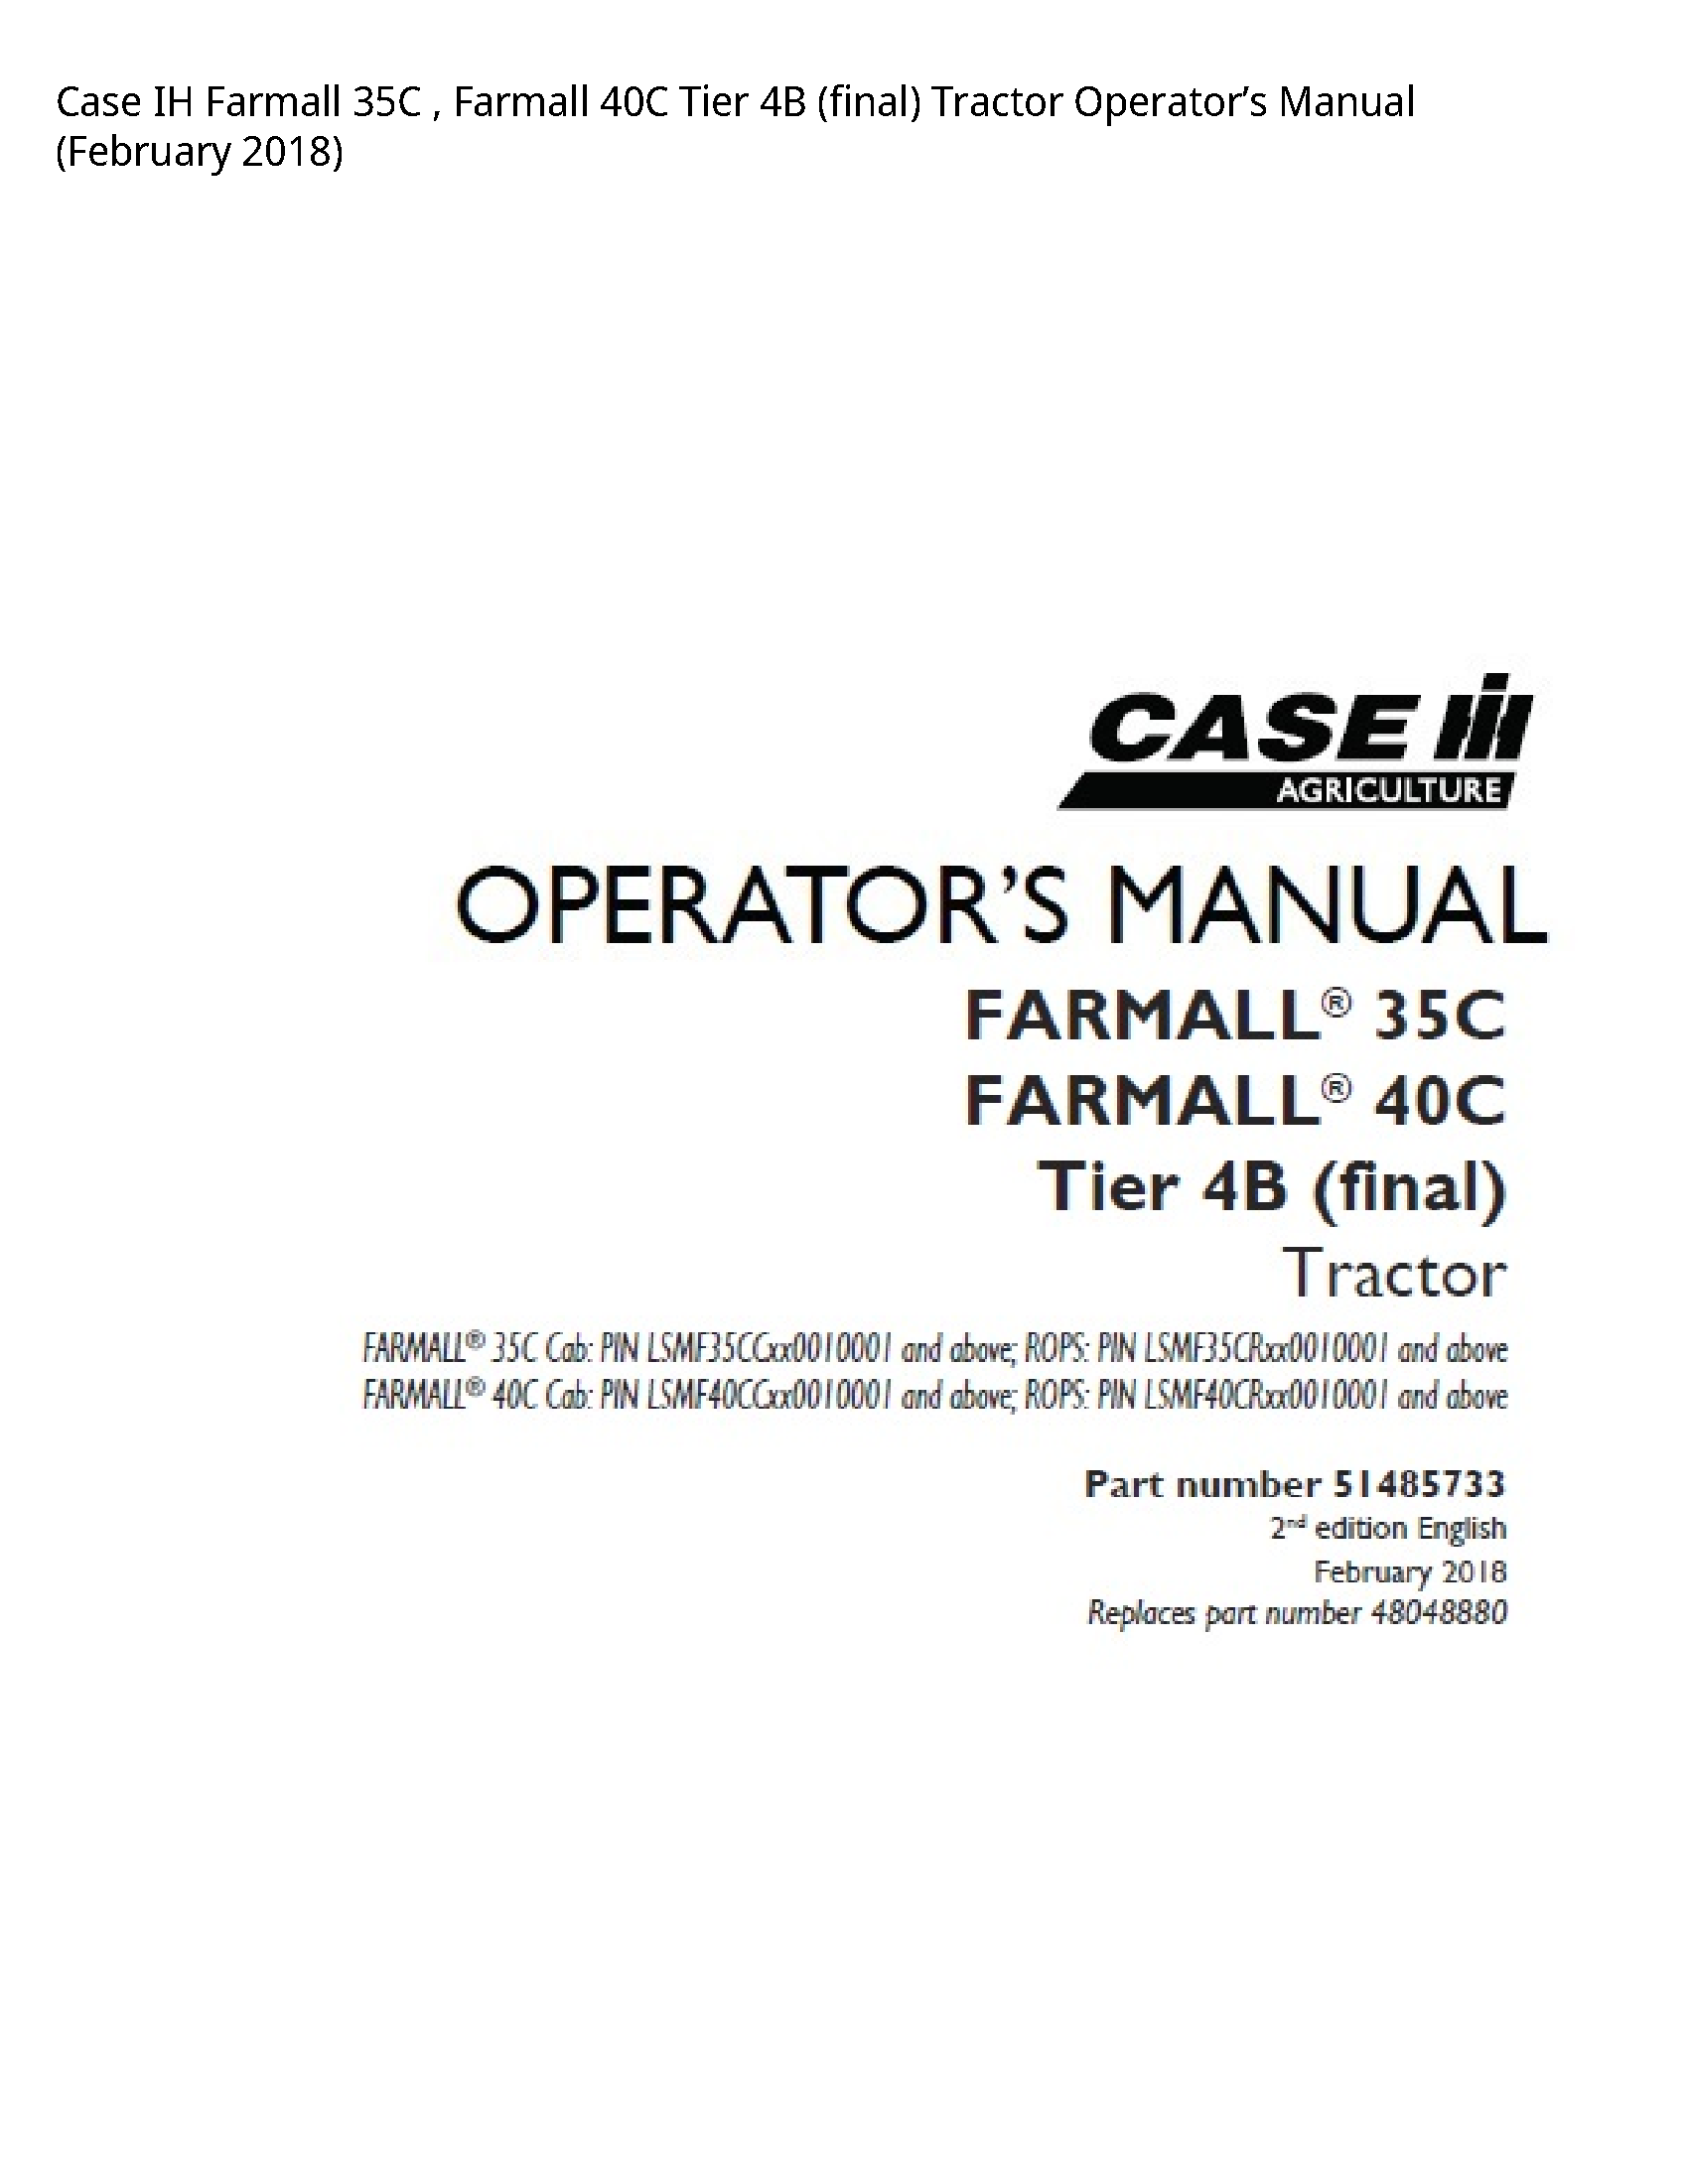 Case/Case IH 35C IH Farmall Farmall Tier (final) Tractor Operator’s manual